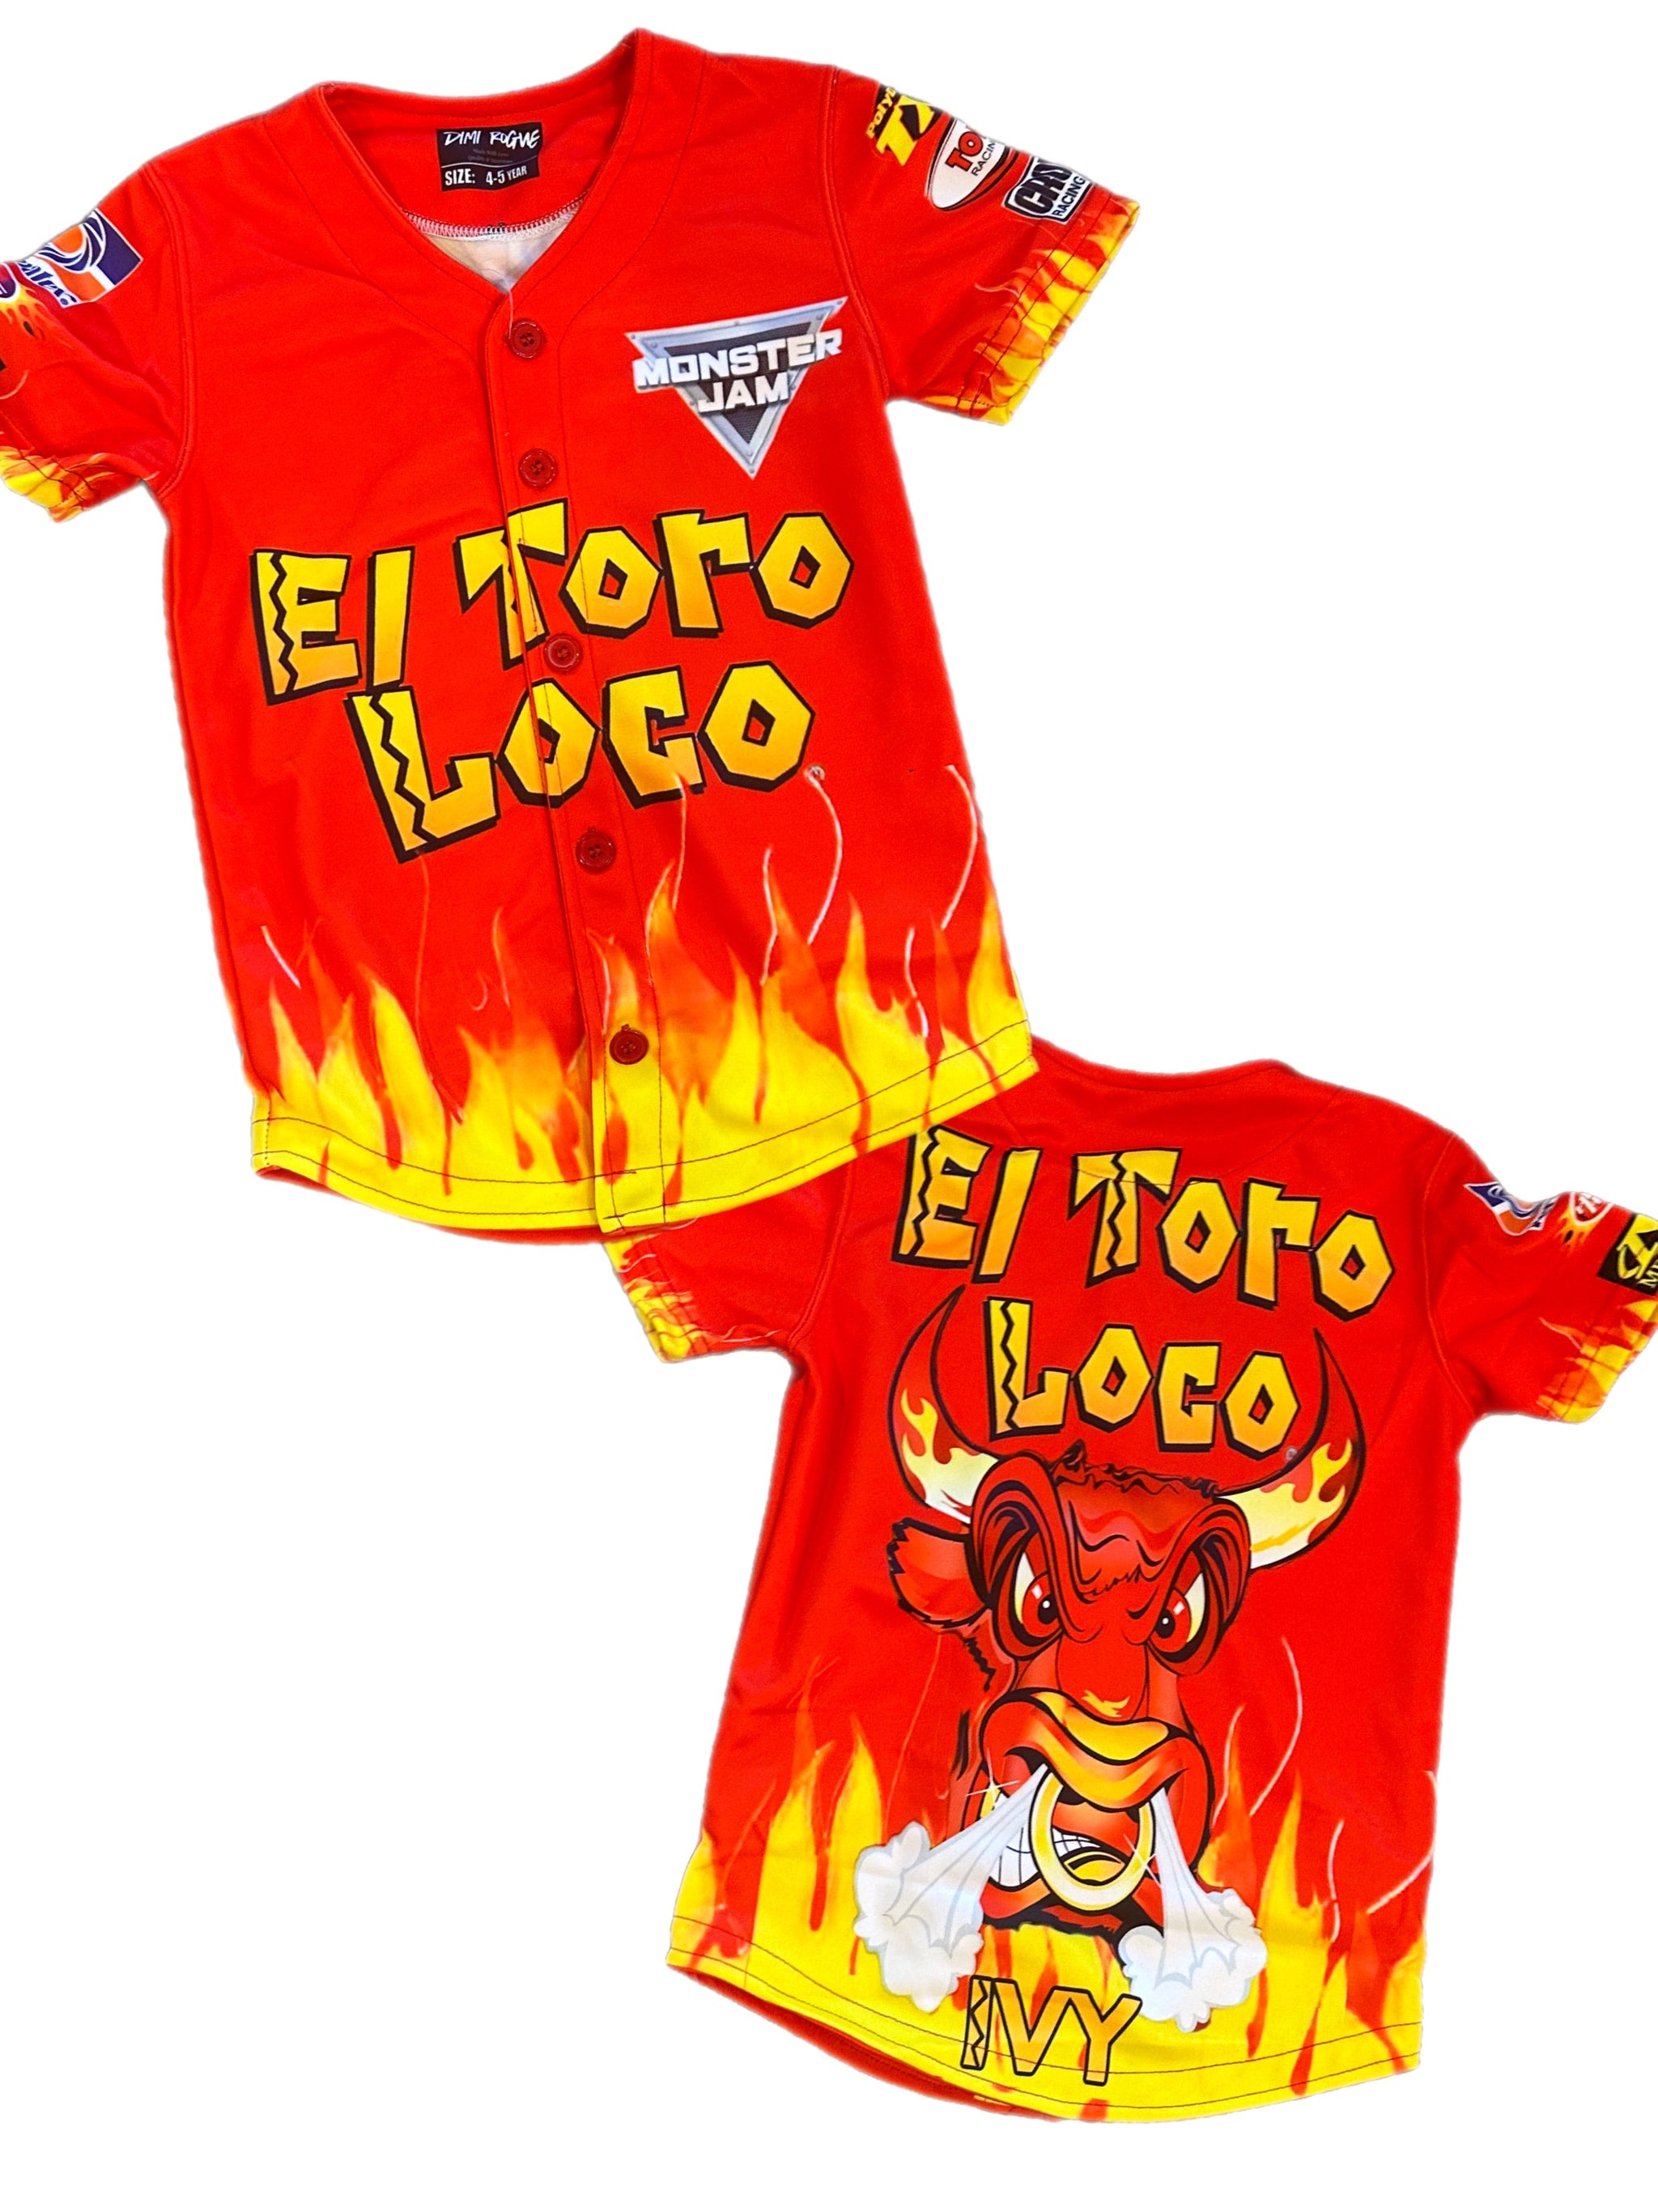 Kids Monster jam El Toro jersey